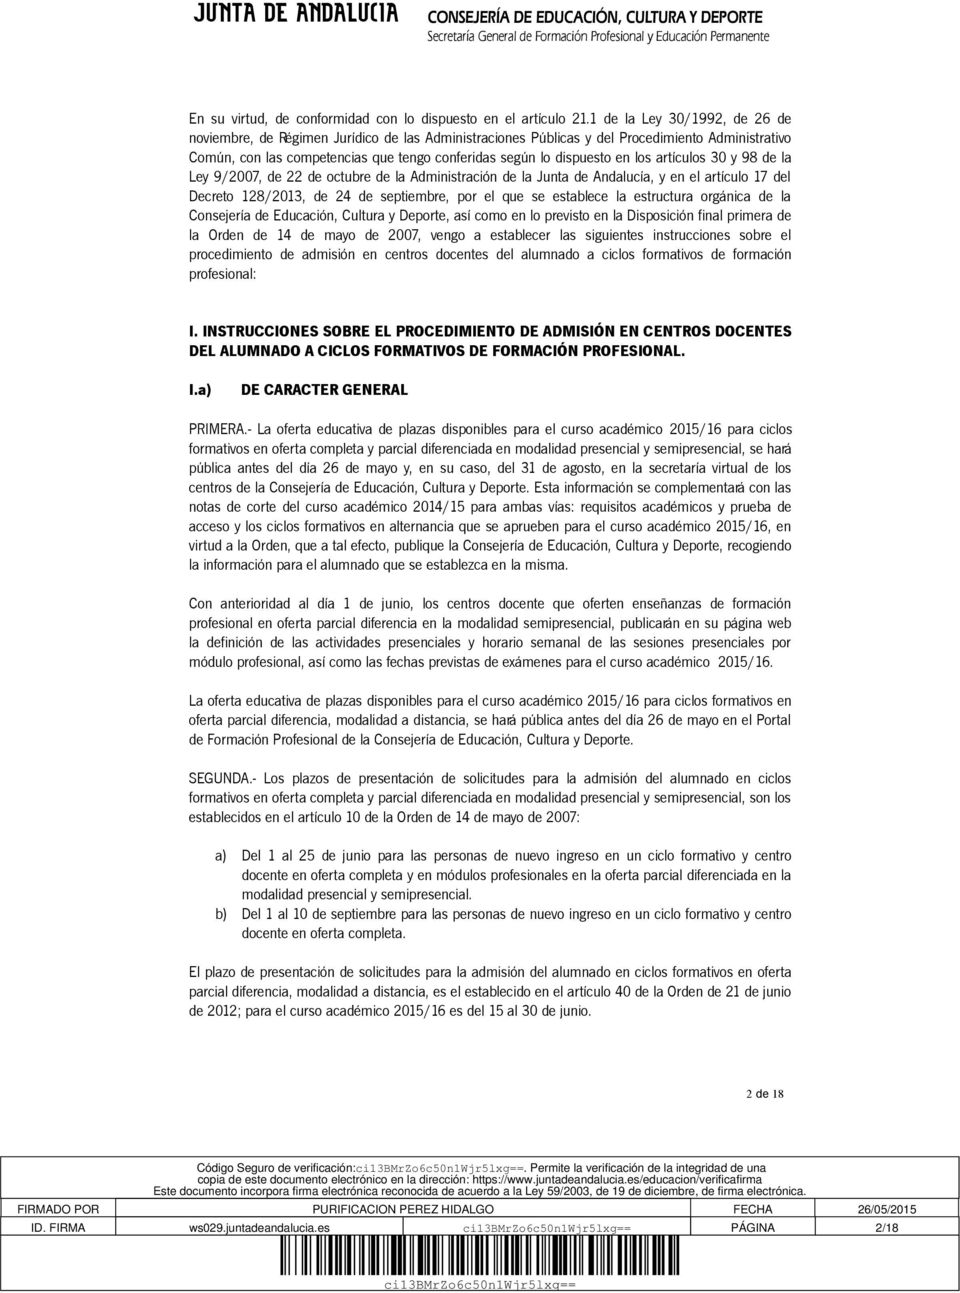 los artículos 30 y 98 de la Ley 9/2007, de 22 de octubre de la Administración de la Junta de Andalucía, y en el artículo 17 del Decreto 128/2013, de 24 de septiembre, por el que se establece la